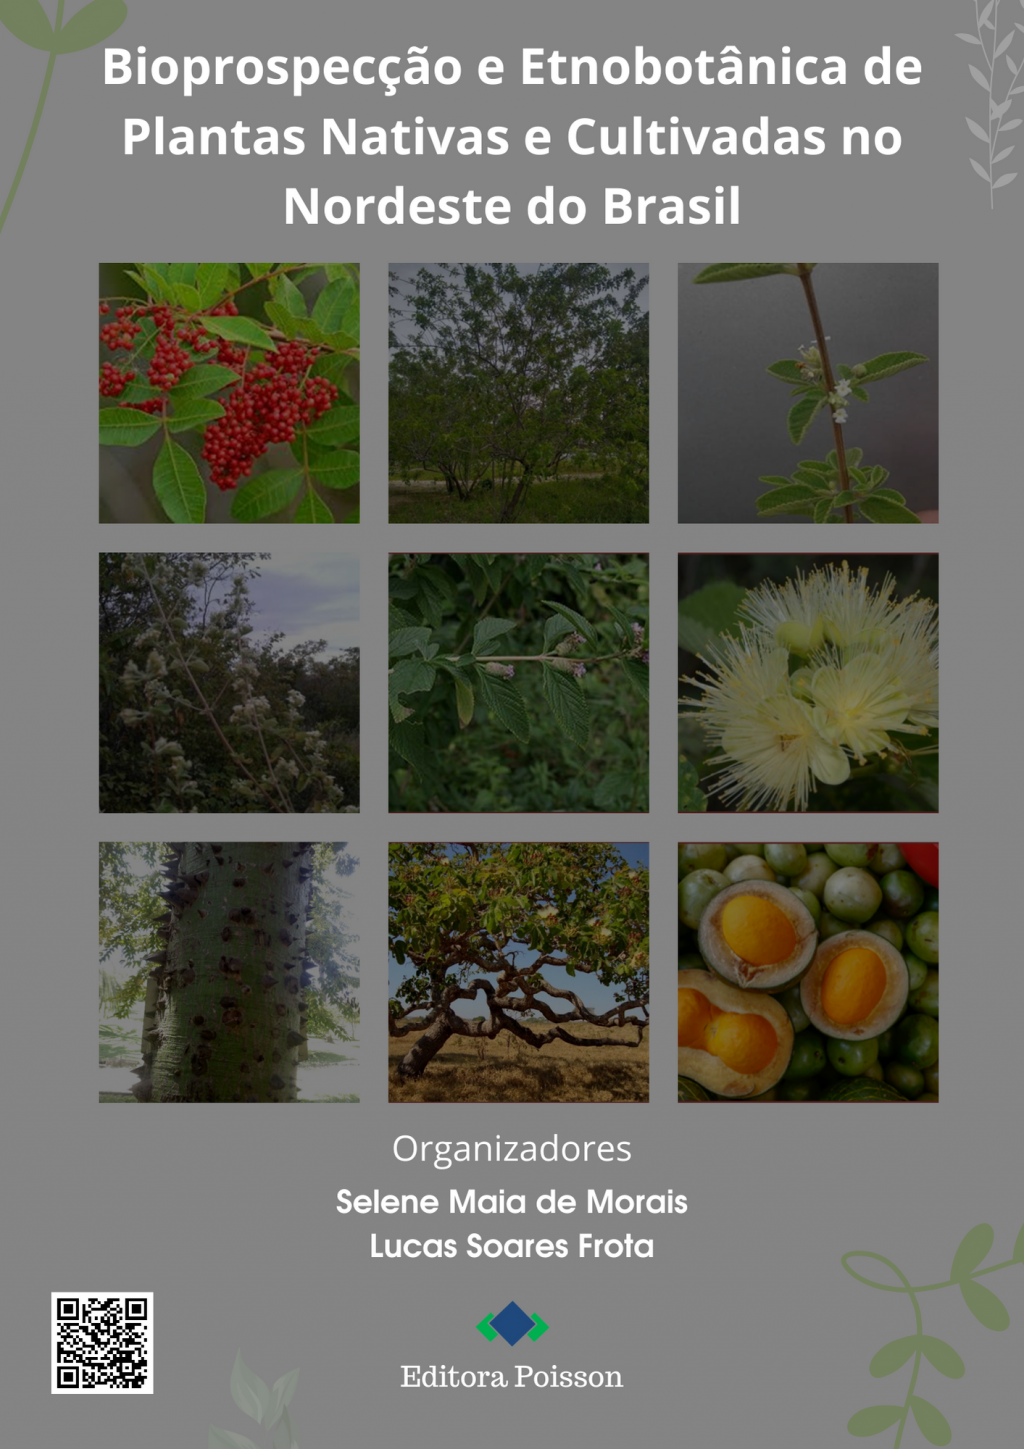 Bioprospecção e etnobotânica de plantas nativas e cultivadas no Nordeste do Brasil